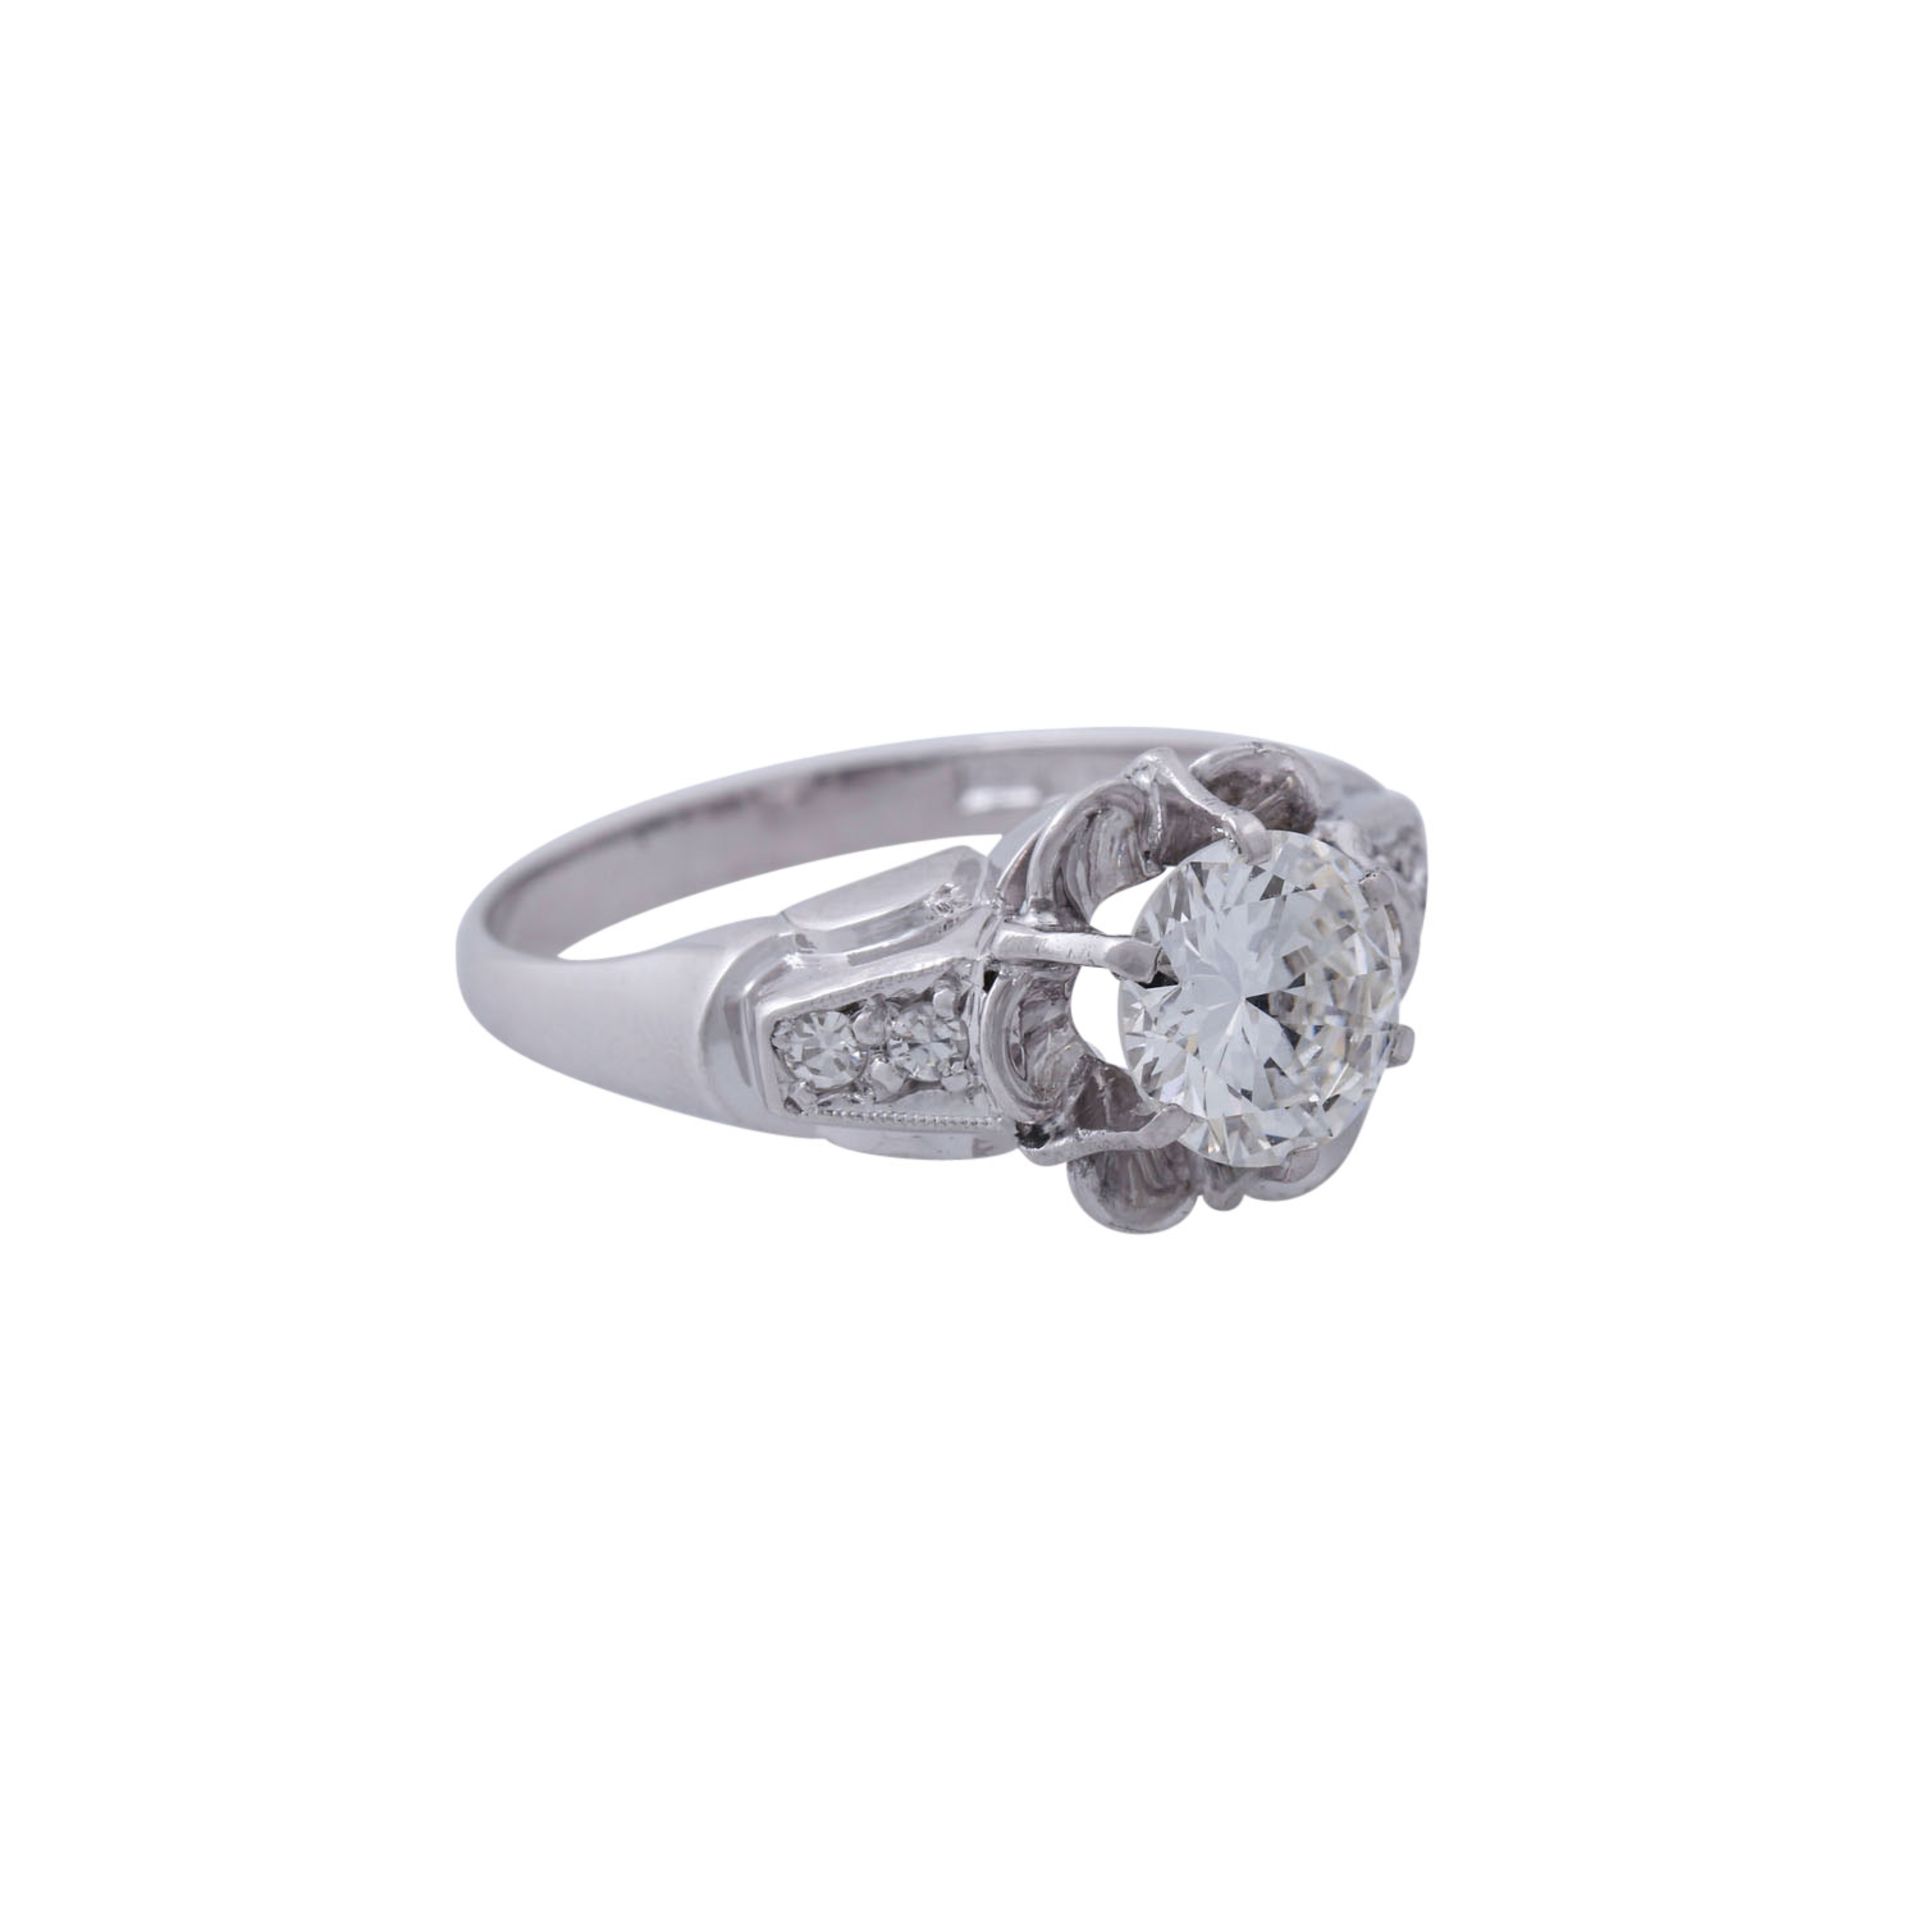 Schöner Diamant-Blütenring mit großem Brillant von 1,25 ct,